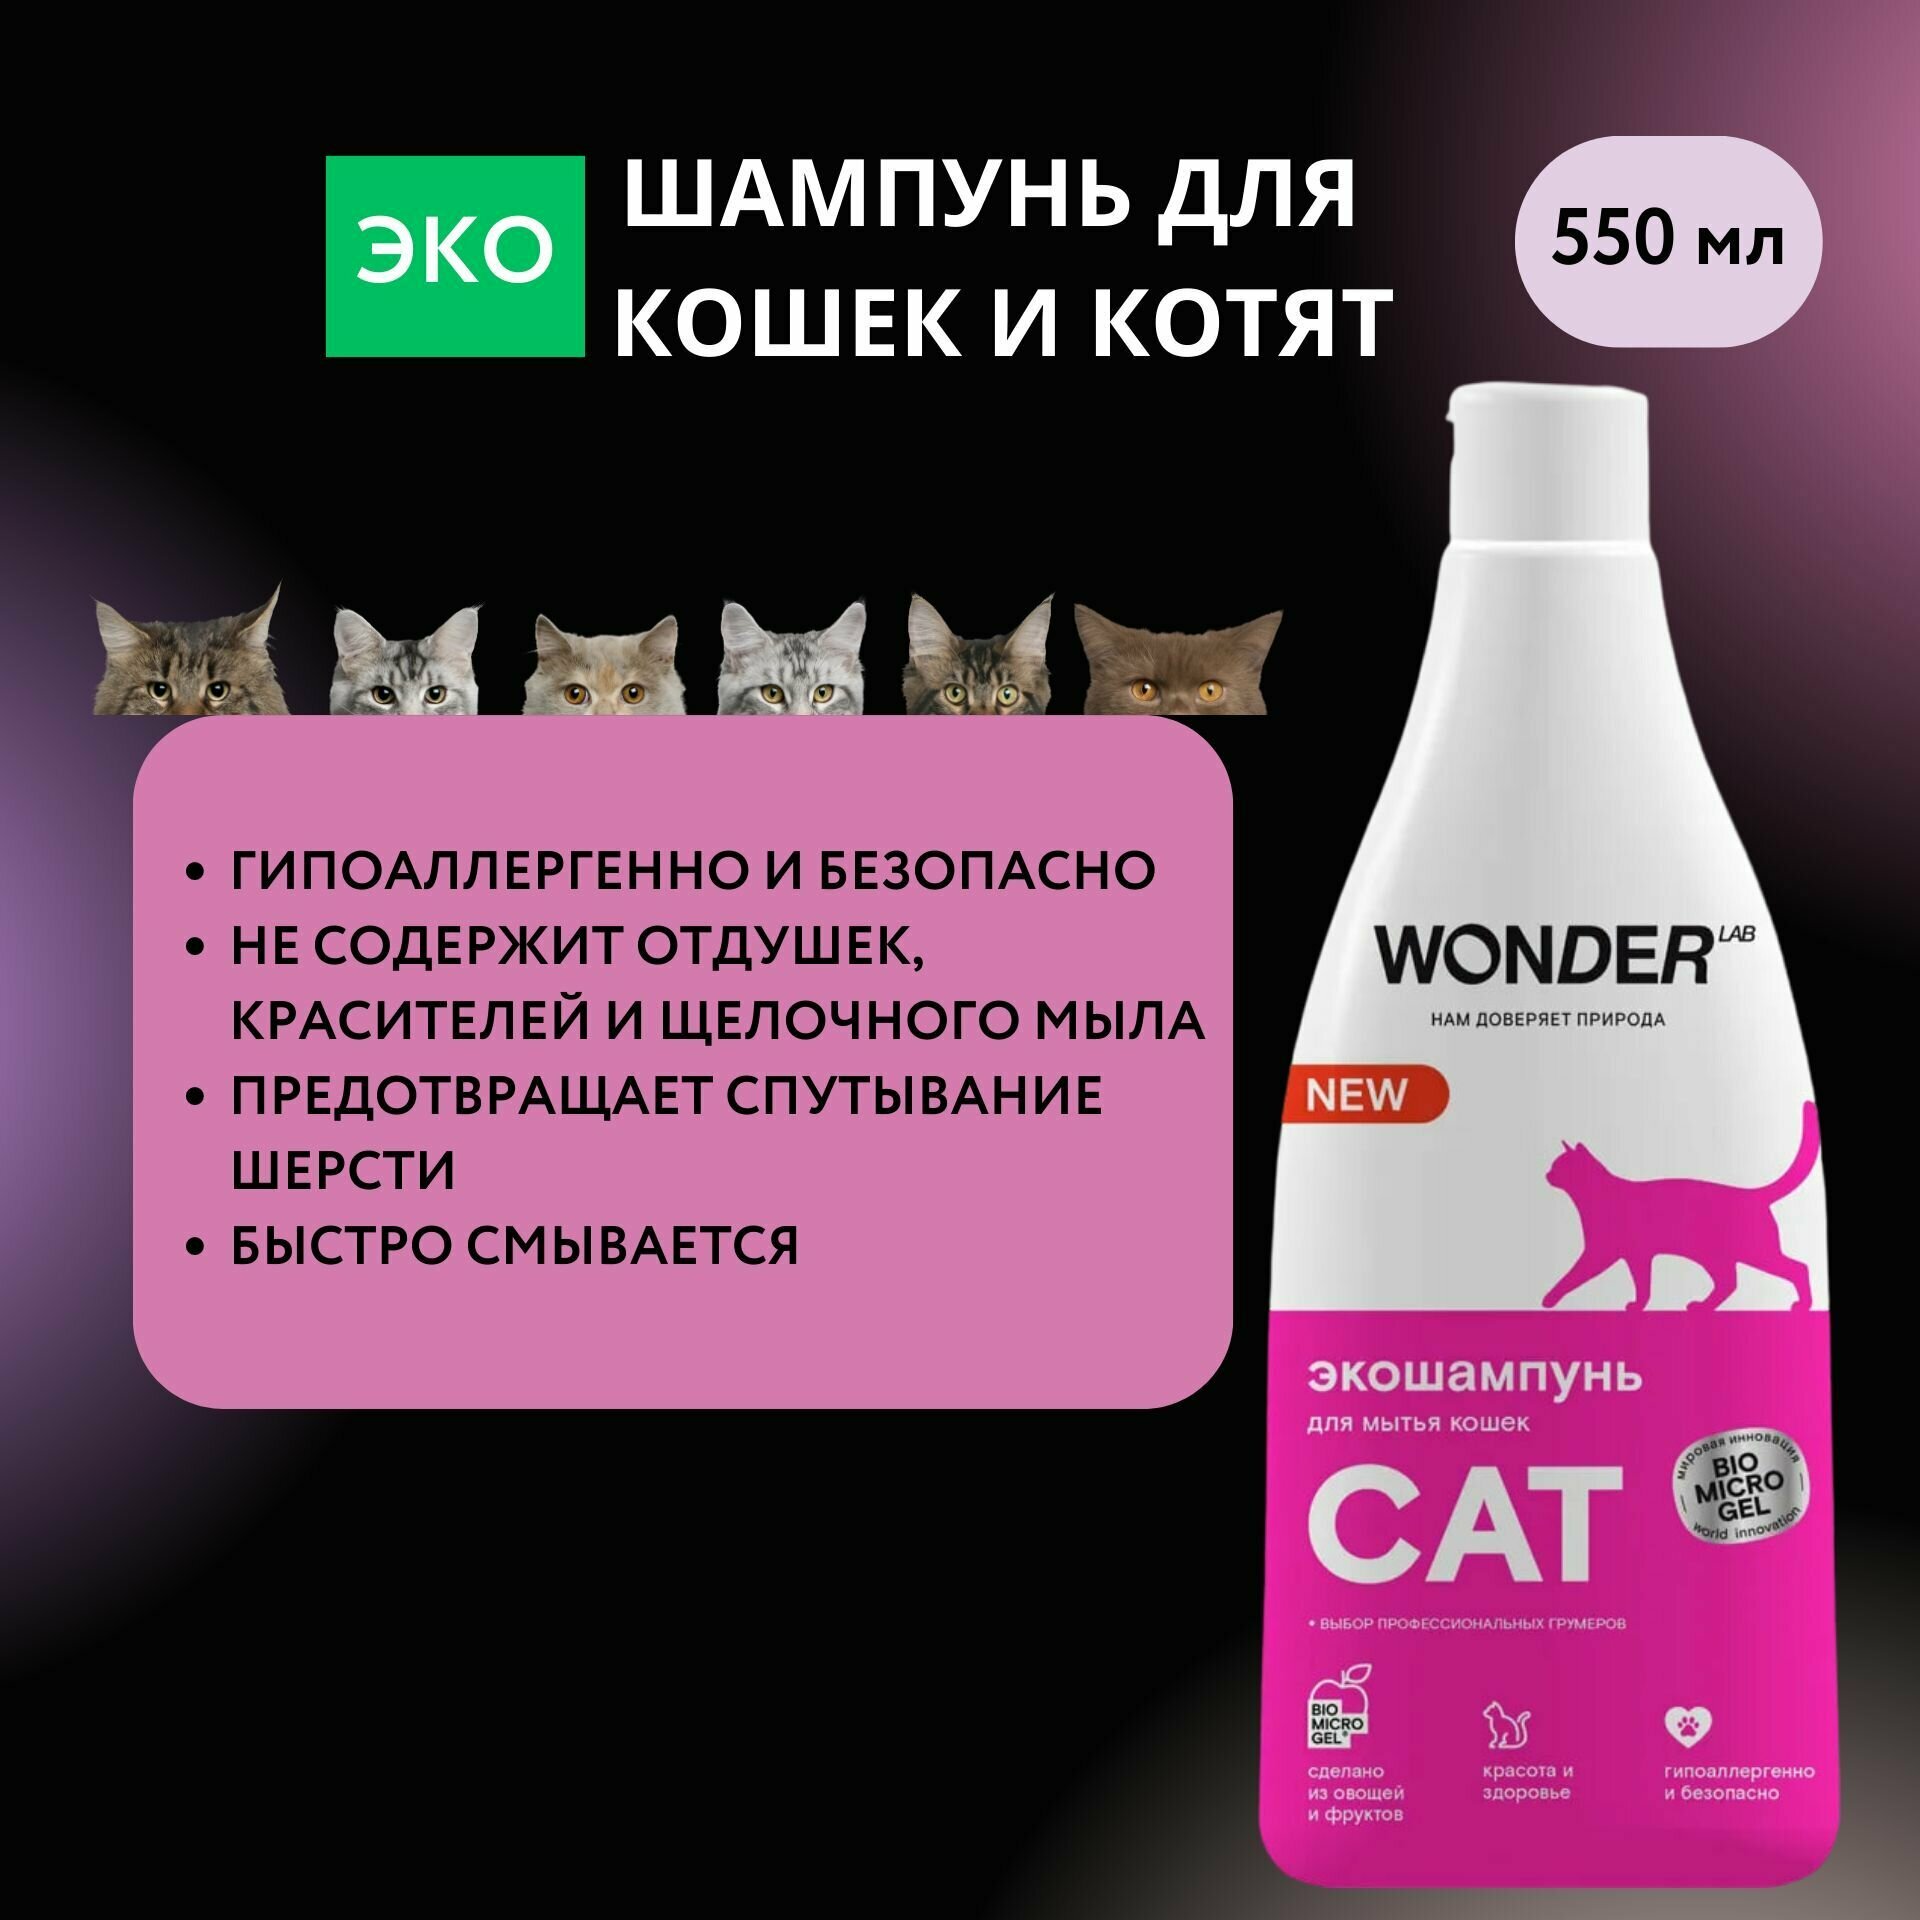 Гипоаллергенный шампунь для кошек и котят WONDER LAB, экологичный, без запаха, 550 мл